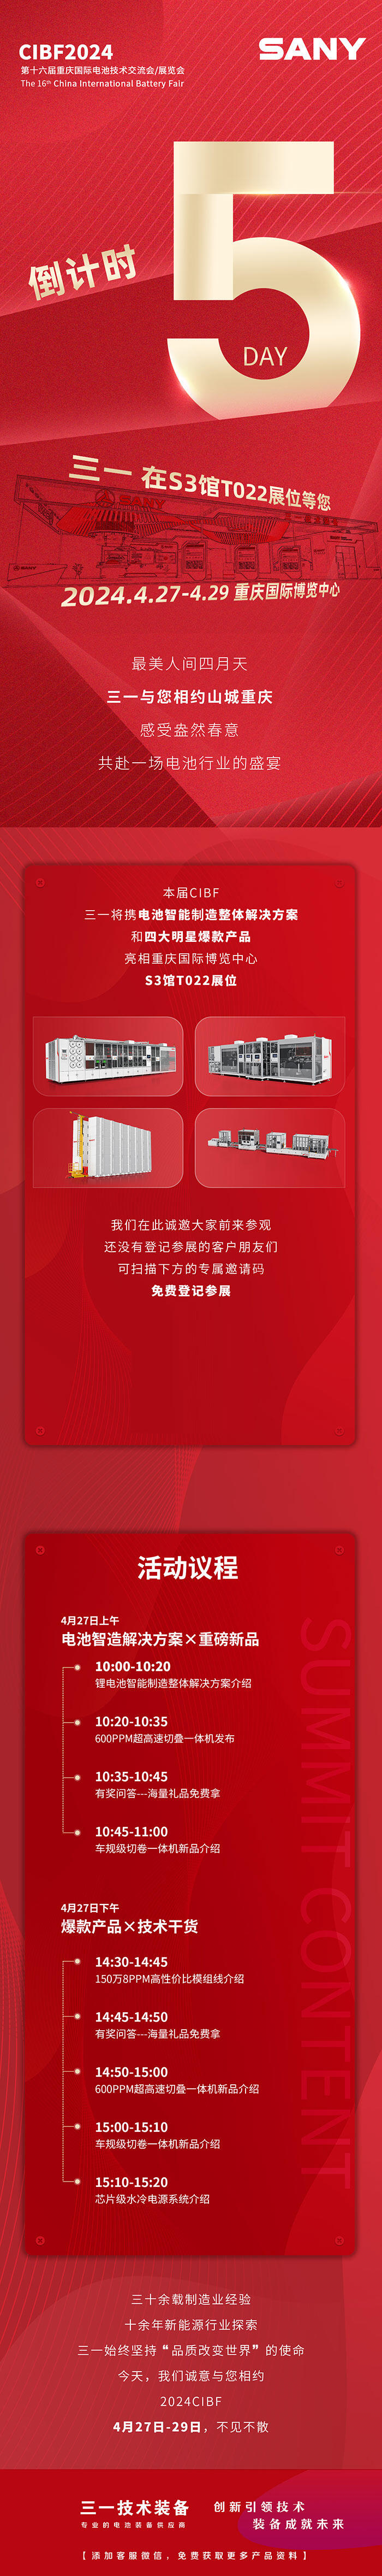 第16届重庆国际电池技术交流会倒计时5天